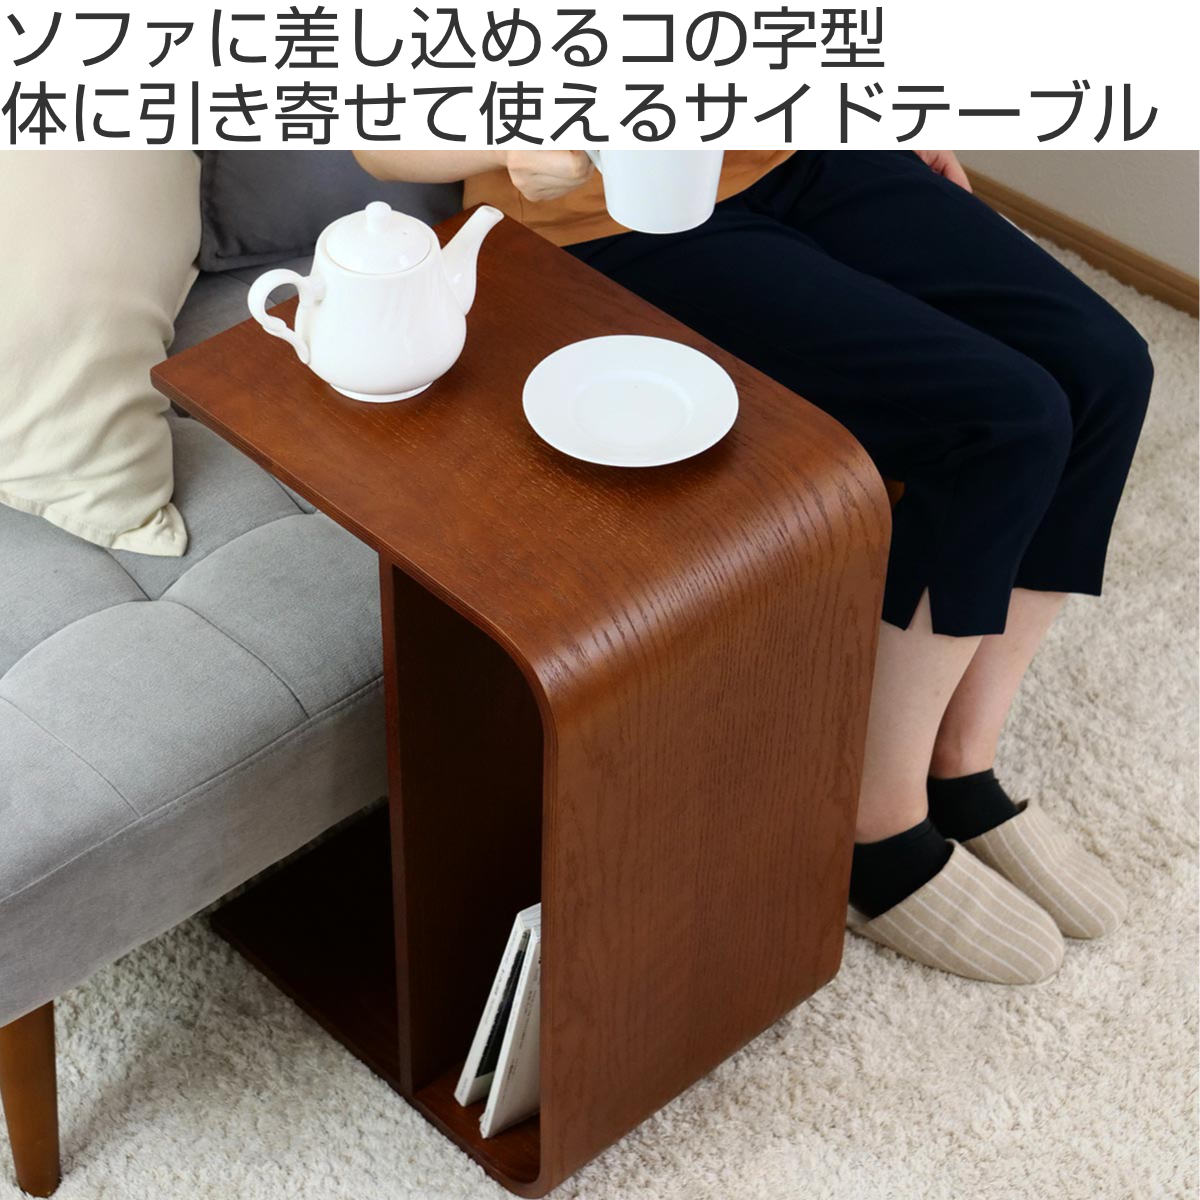 コンパクト サイドテーブル コの字 ベッドサイド机・テーブル - サイド